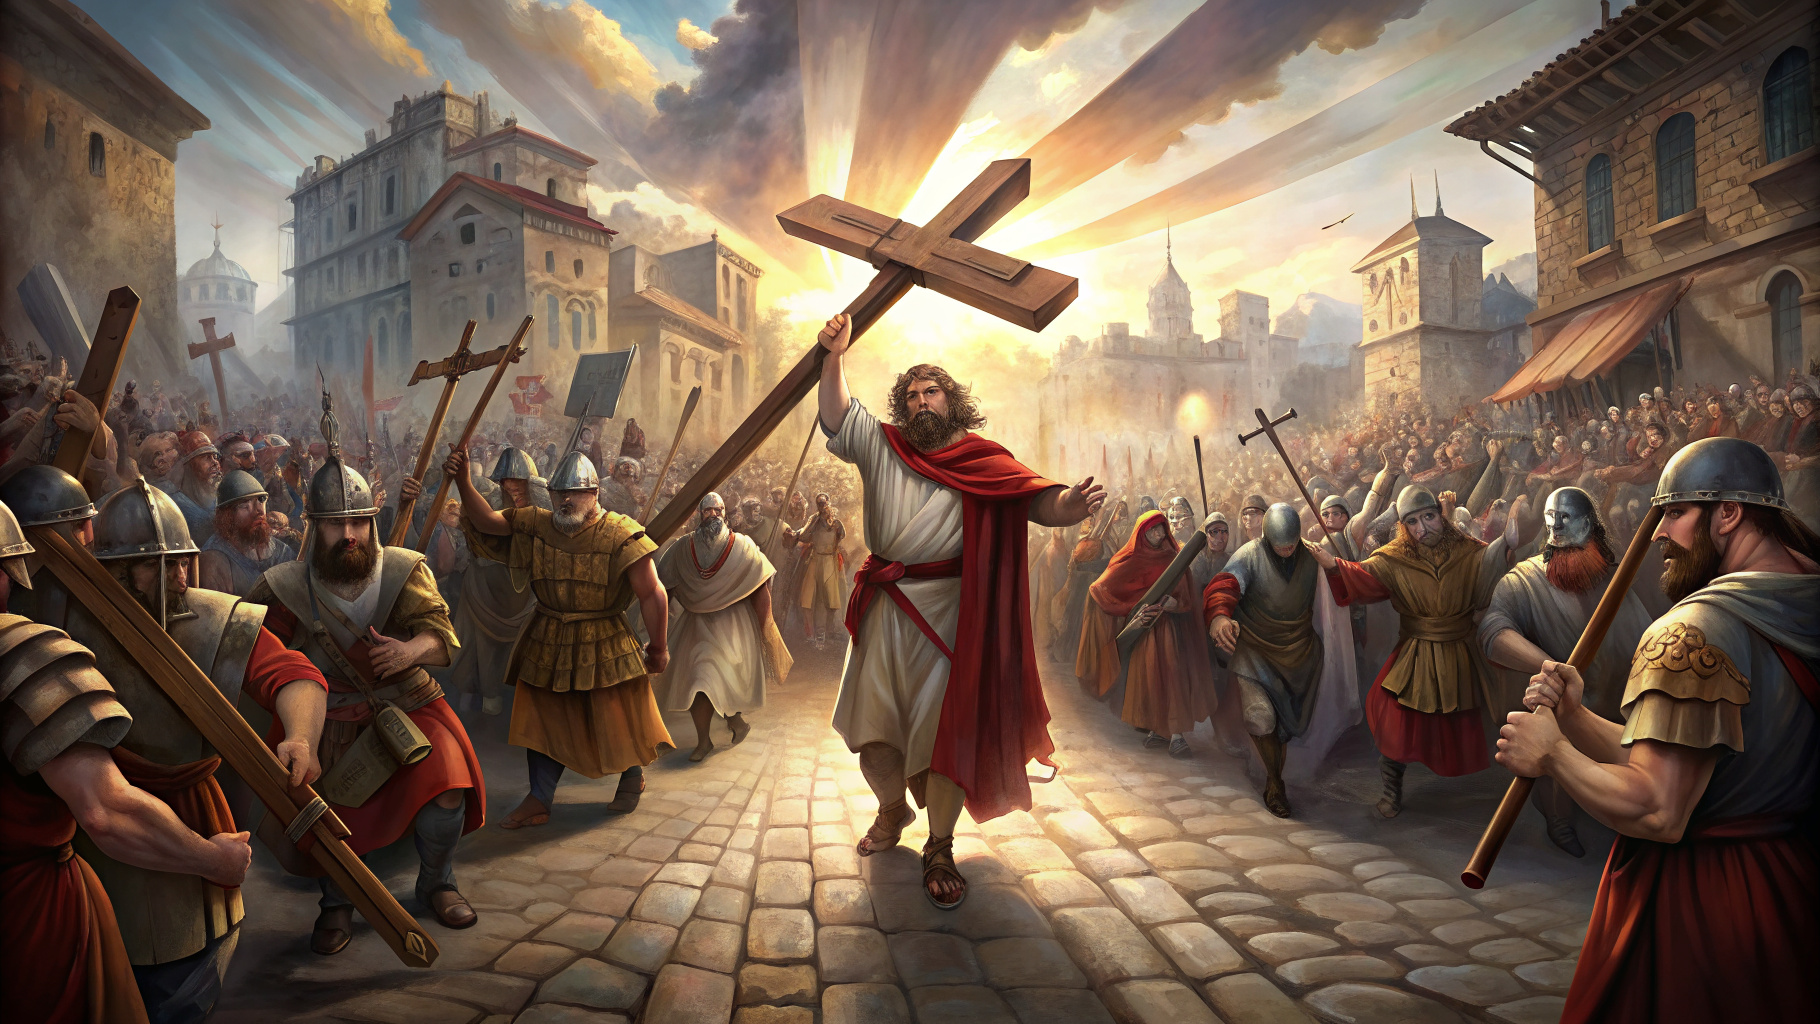 Jesus carregando a cruz no meio da cidade com soldados romanos atrás dele e pessoas paradas nas ruas olhando